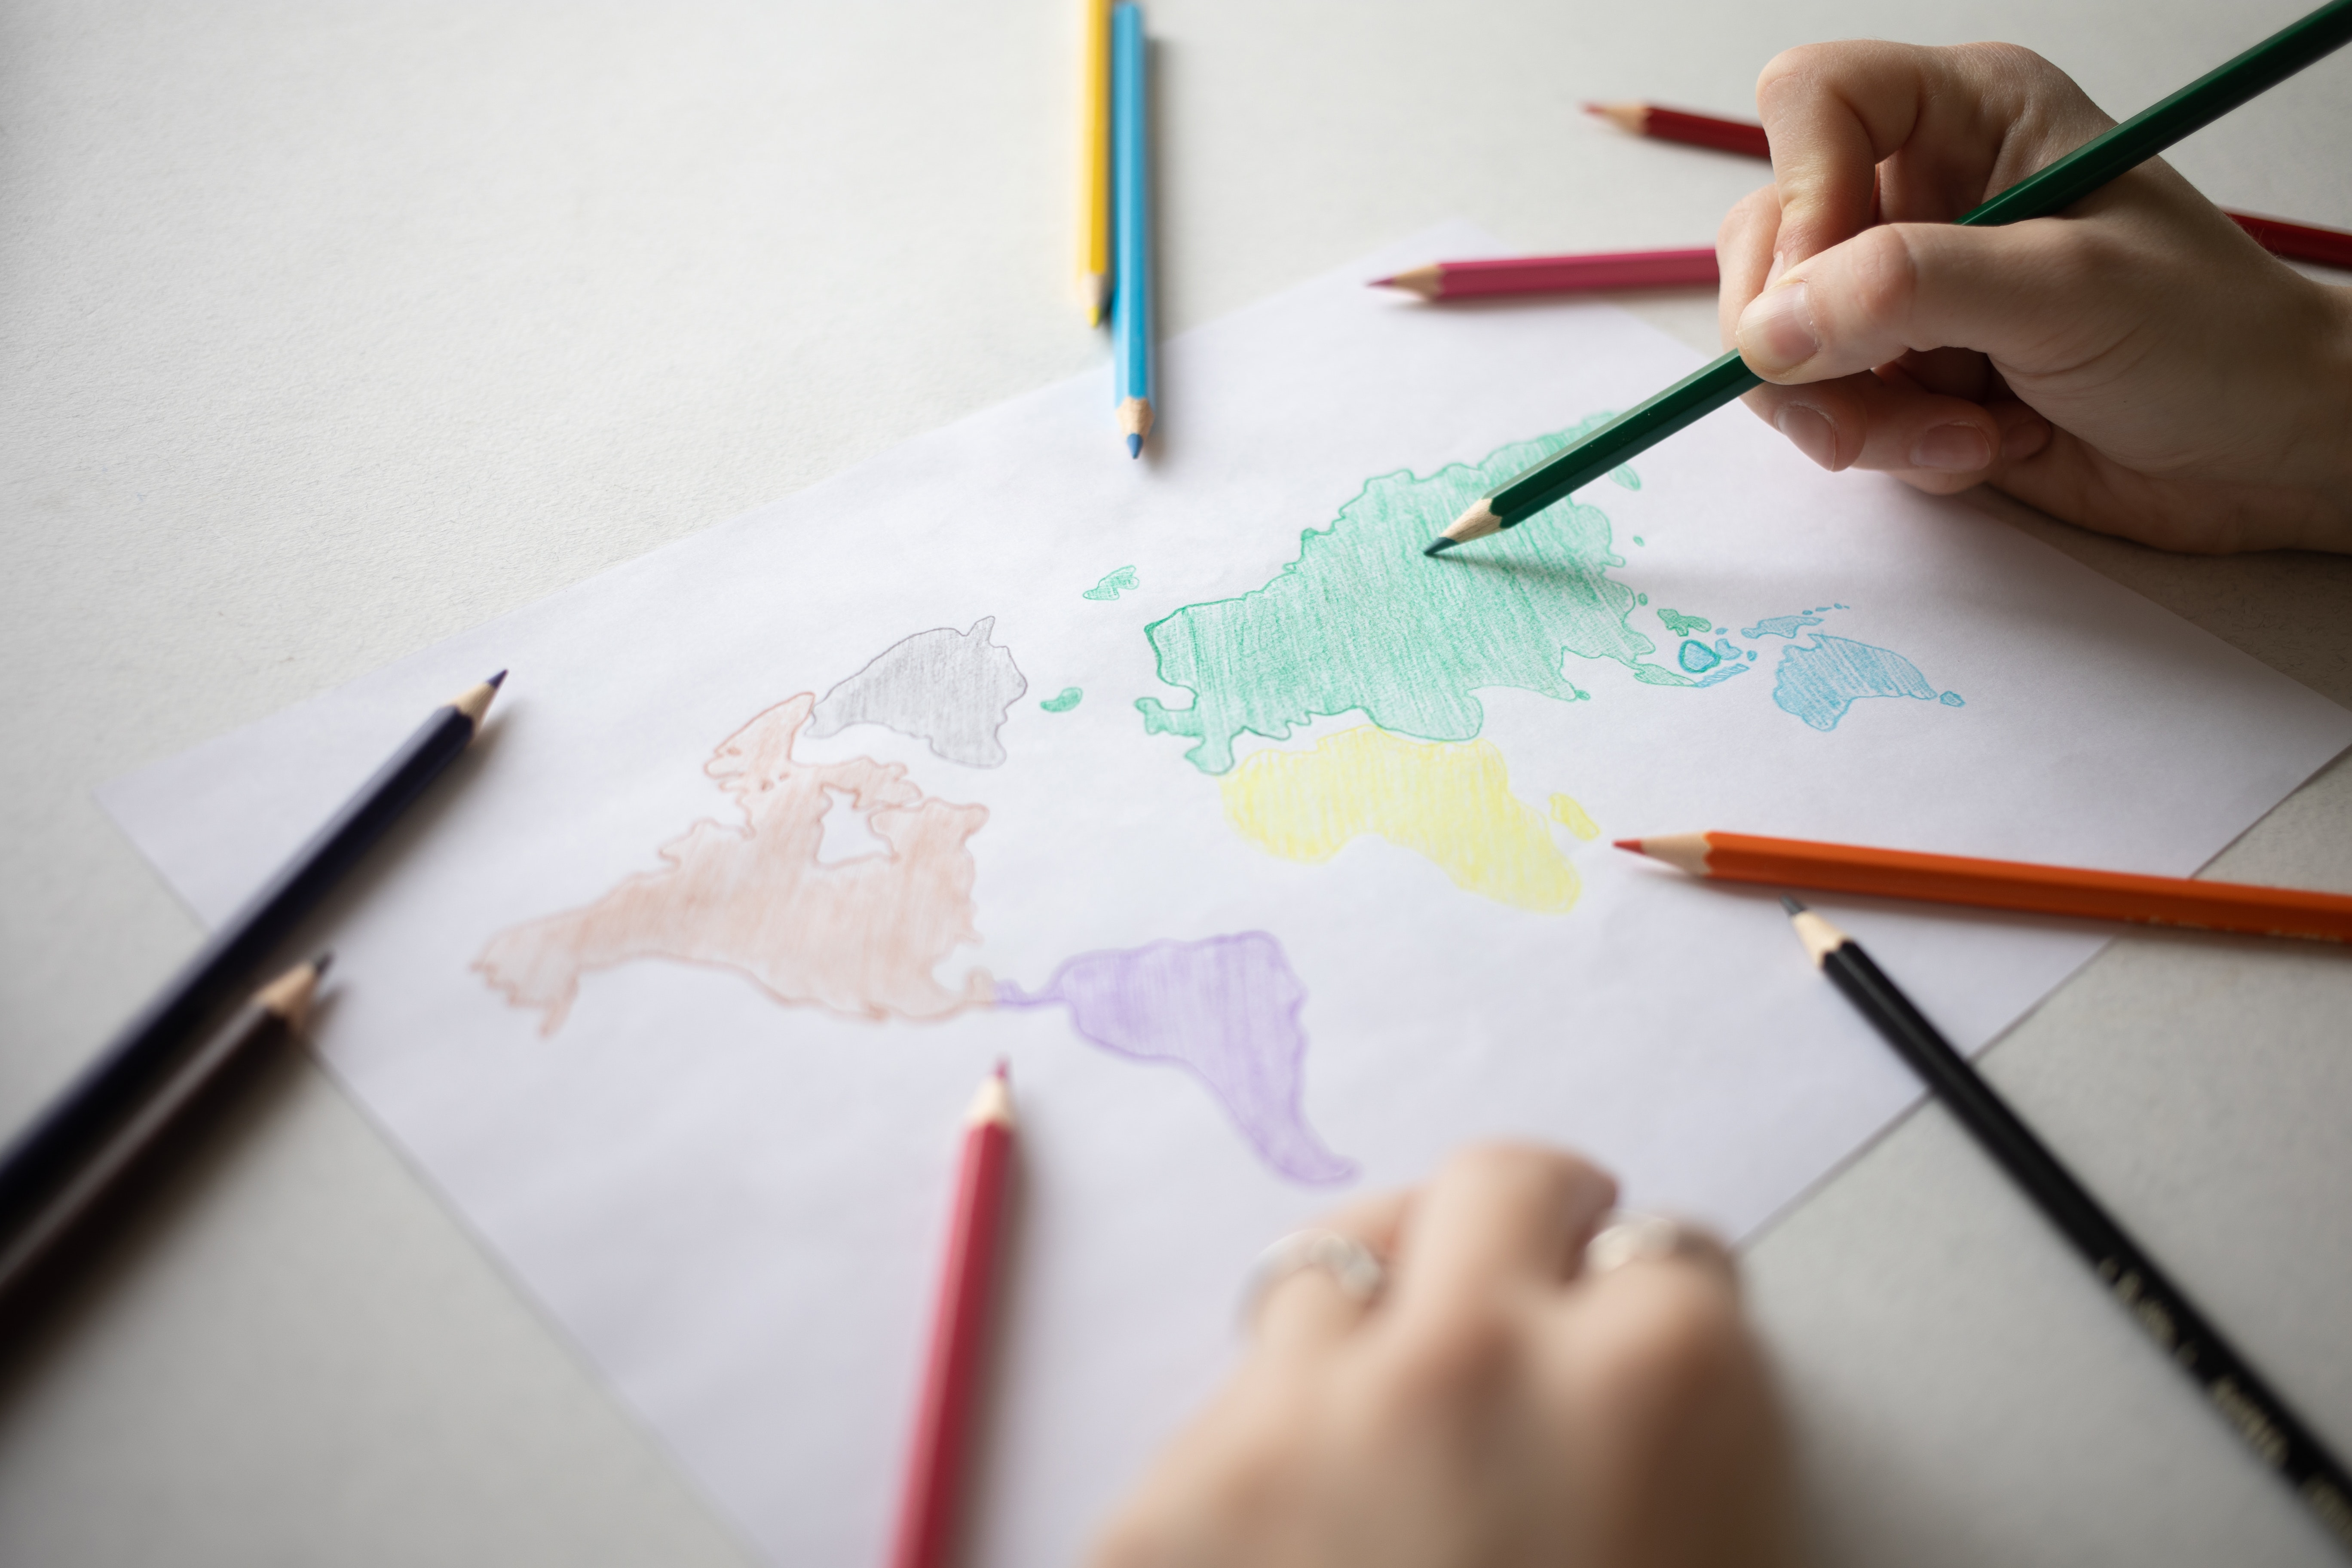 La imagen muestra una mano dibujando un mapa.